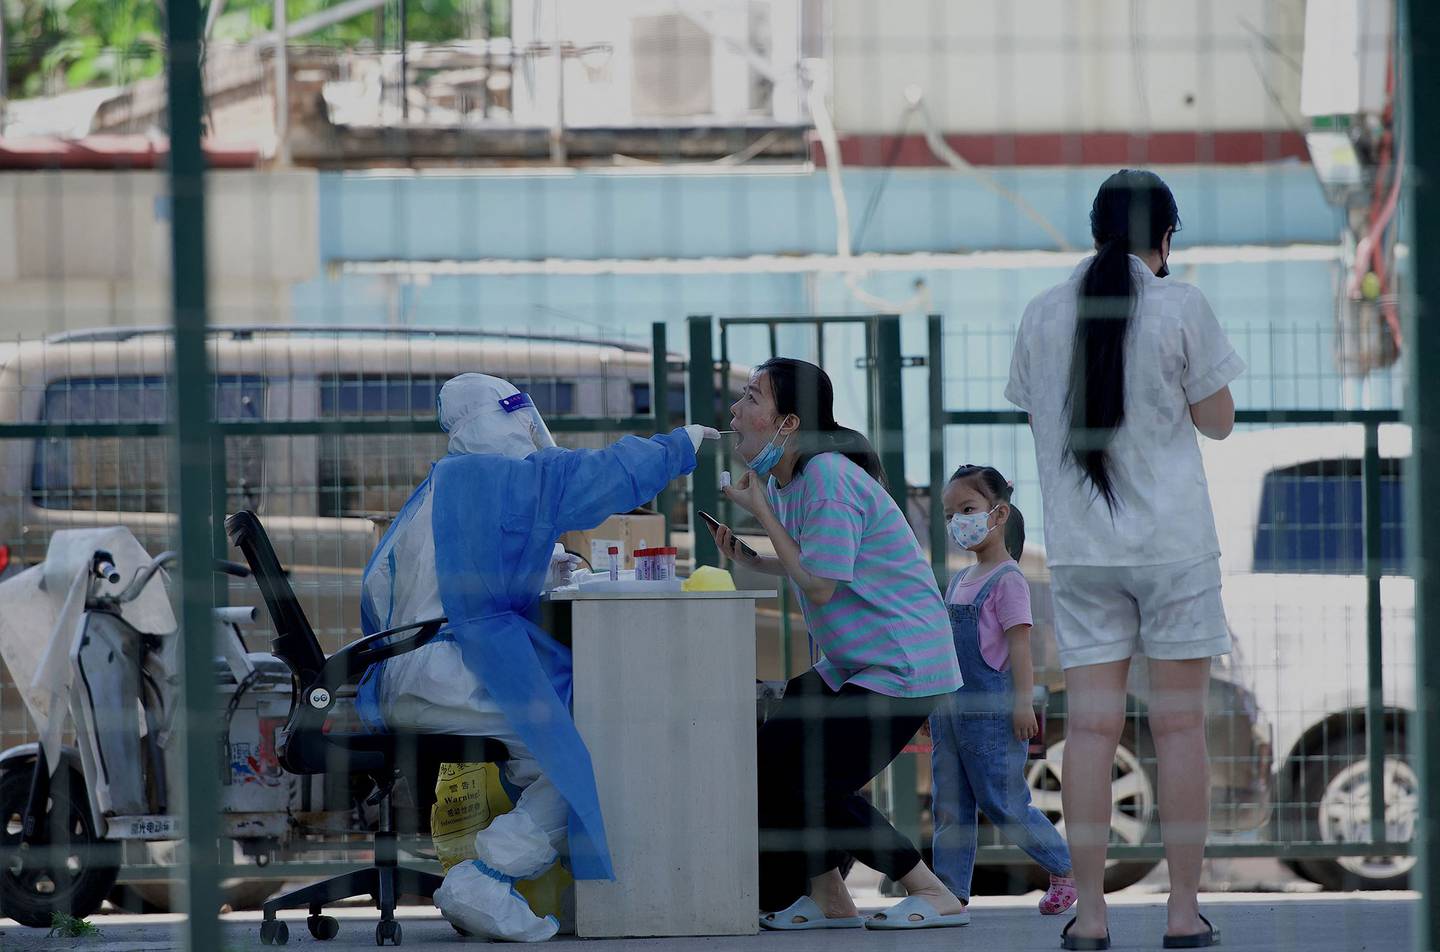 Un trabajador de la salud recibe una muestra de hisopo de una mujer dentro de un área residencial cerrada con vallas bajo confinamiento debido a las restricciones por Covid-19 en Pekín el 26 de mayo de 2022.  Fotógrafo: Noel Celis/AFP/Getty Images